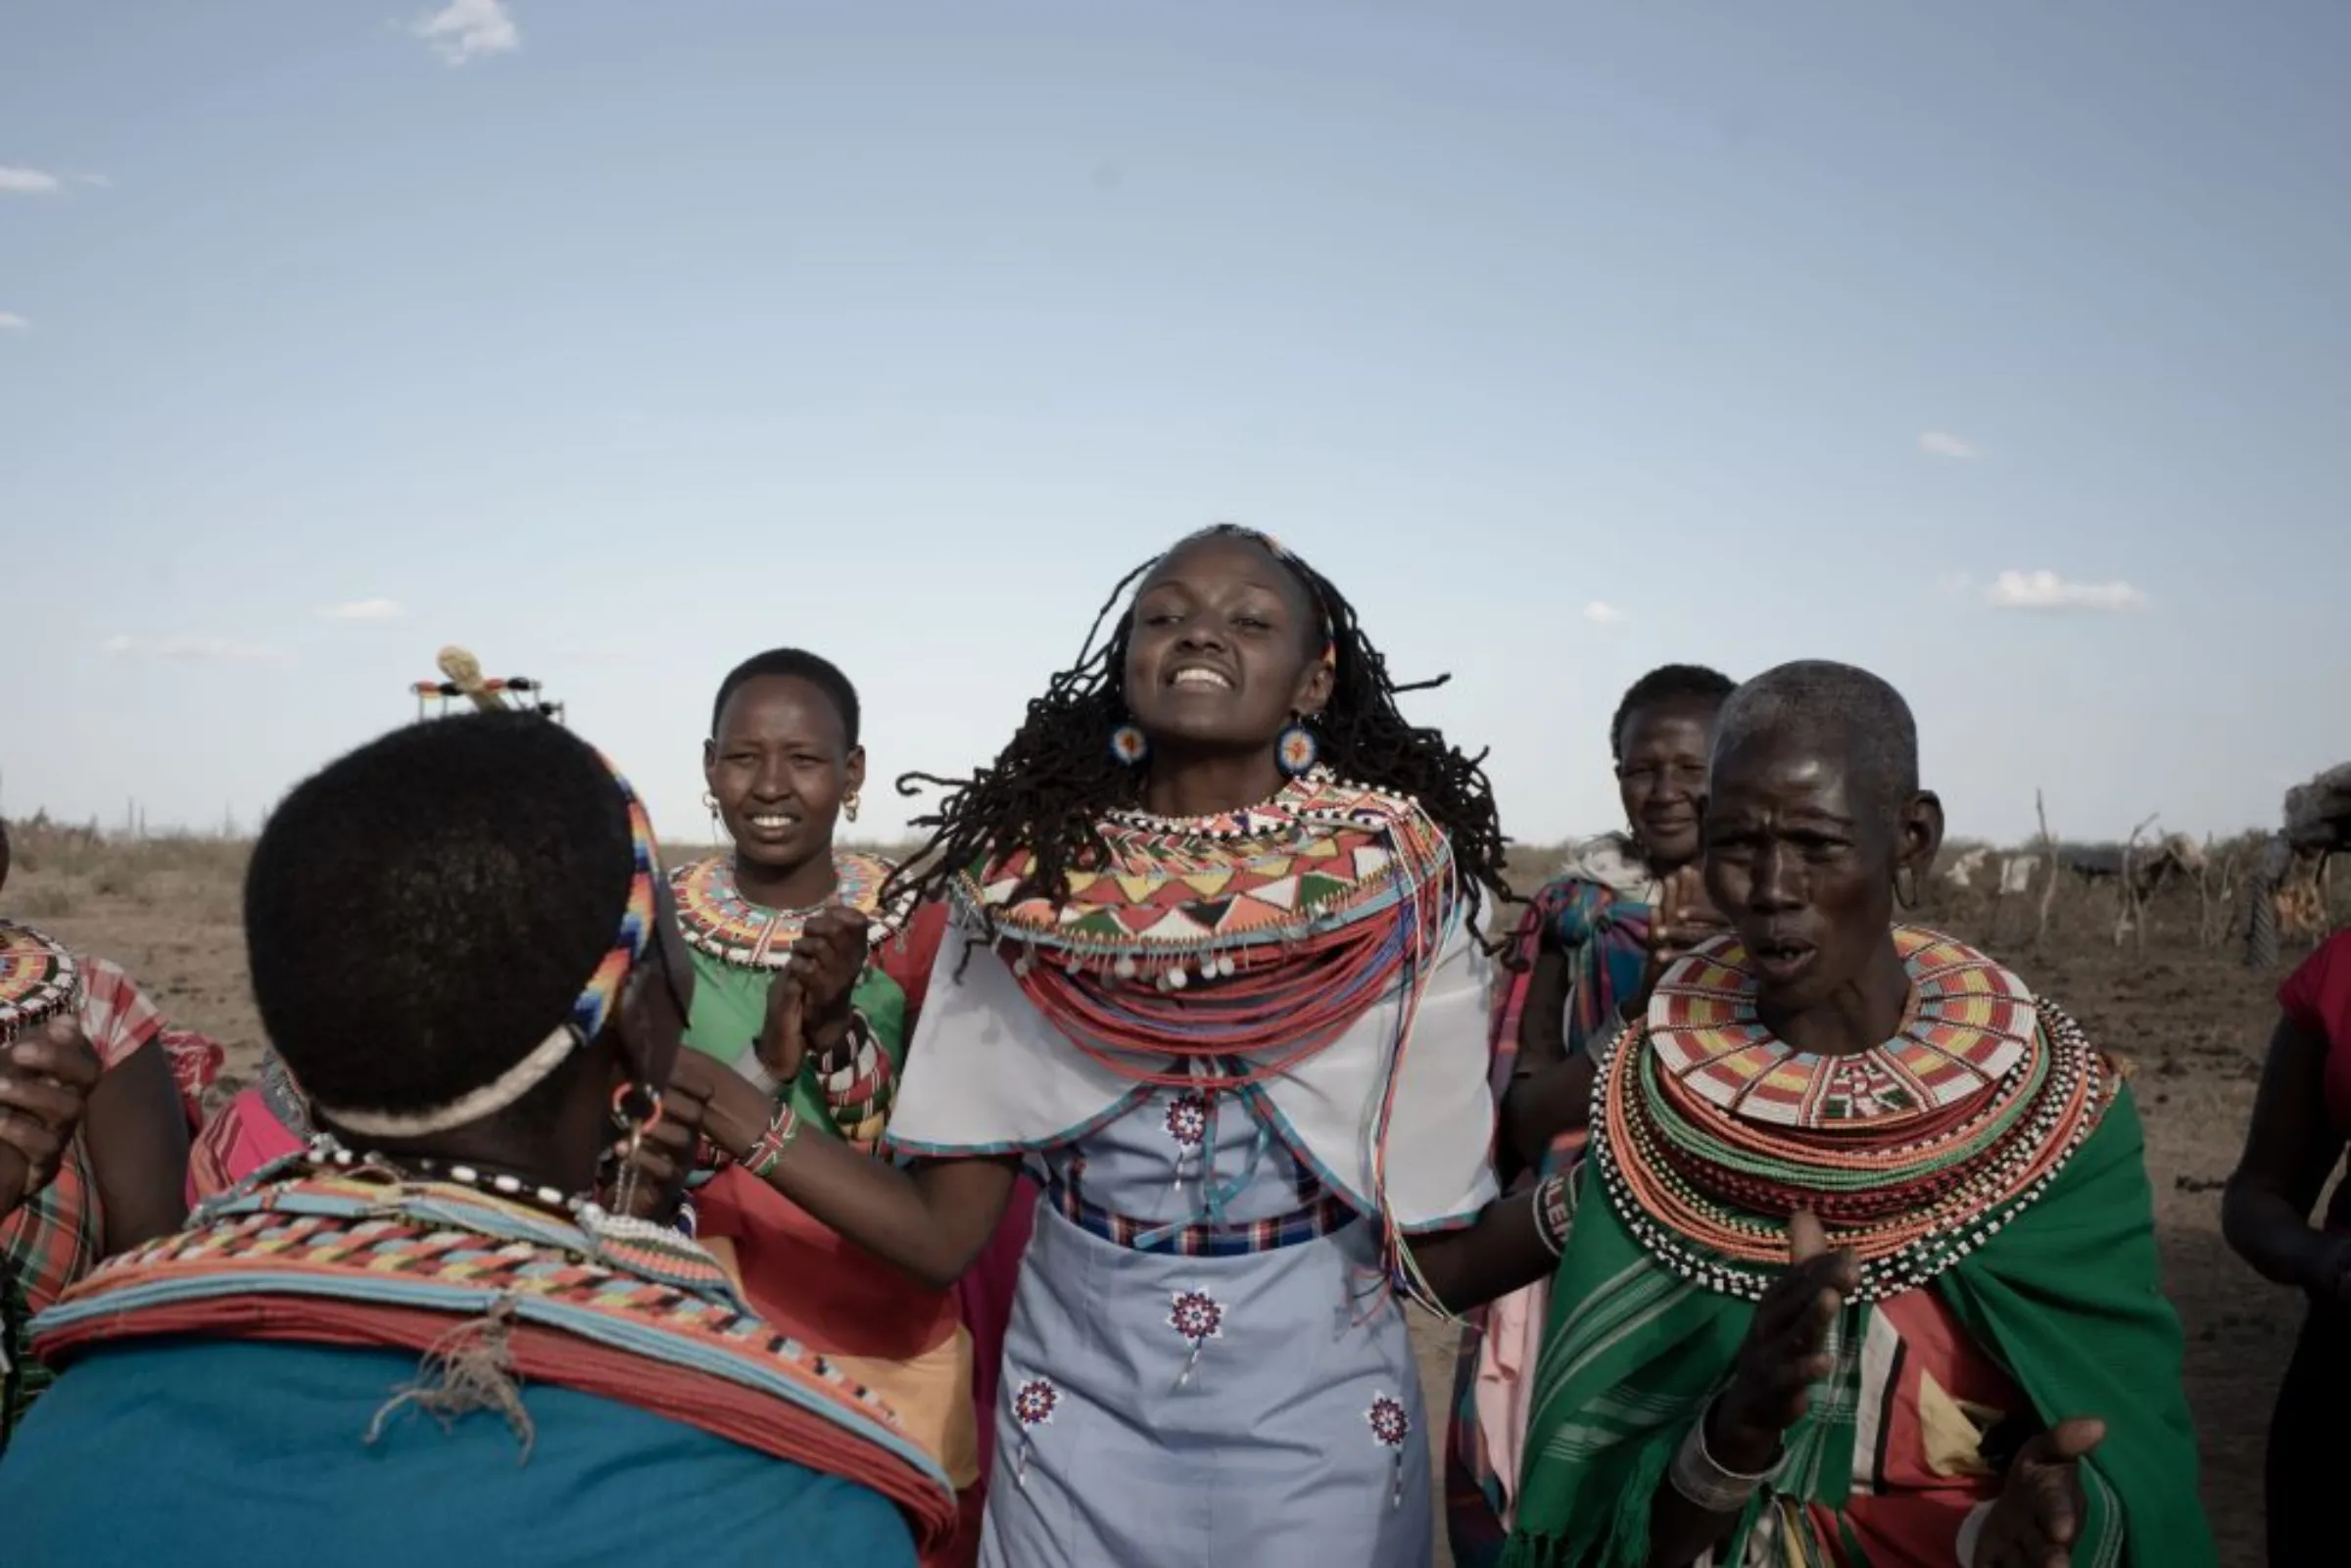 The Samburu Girls Foundation in Kenya